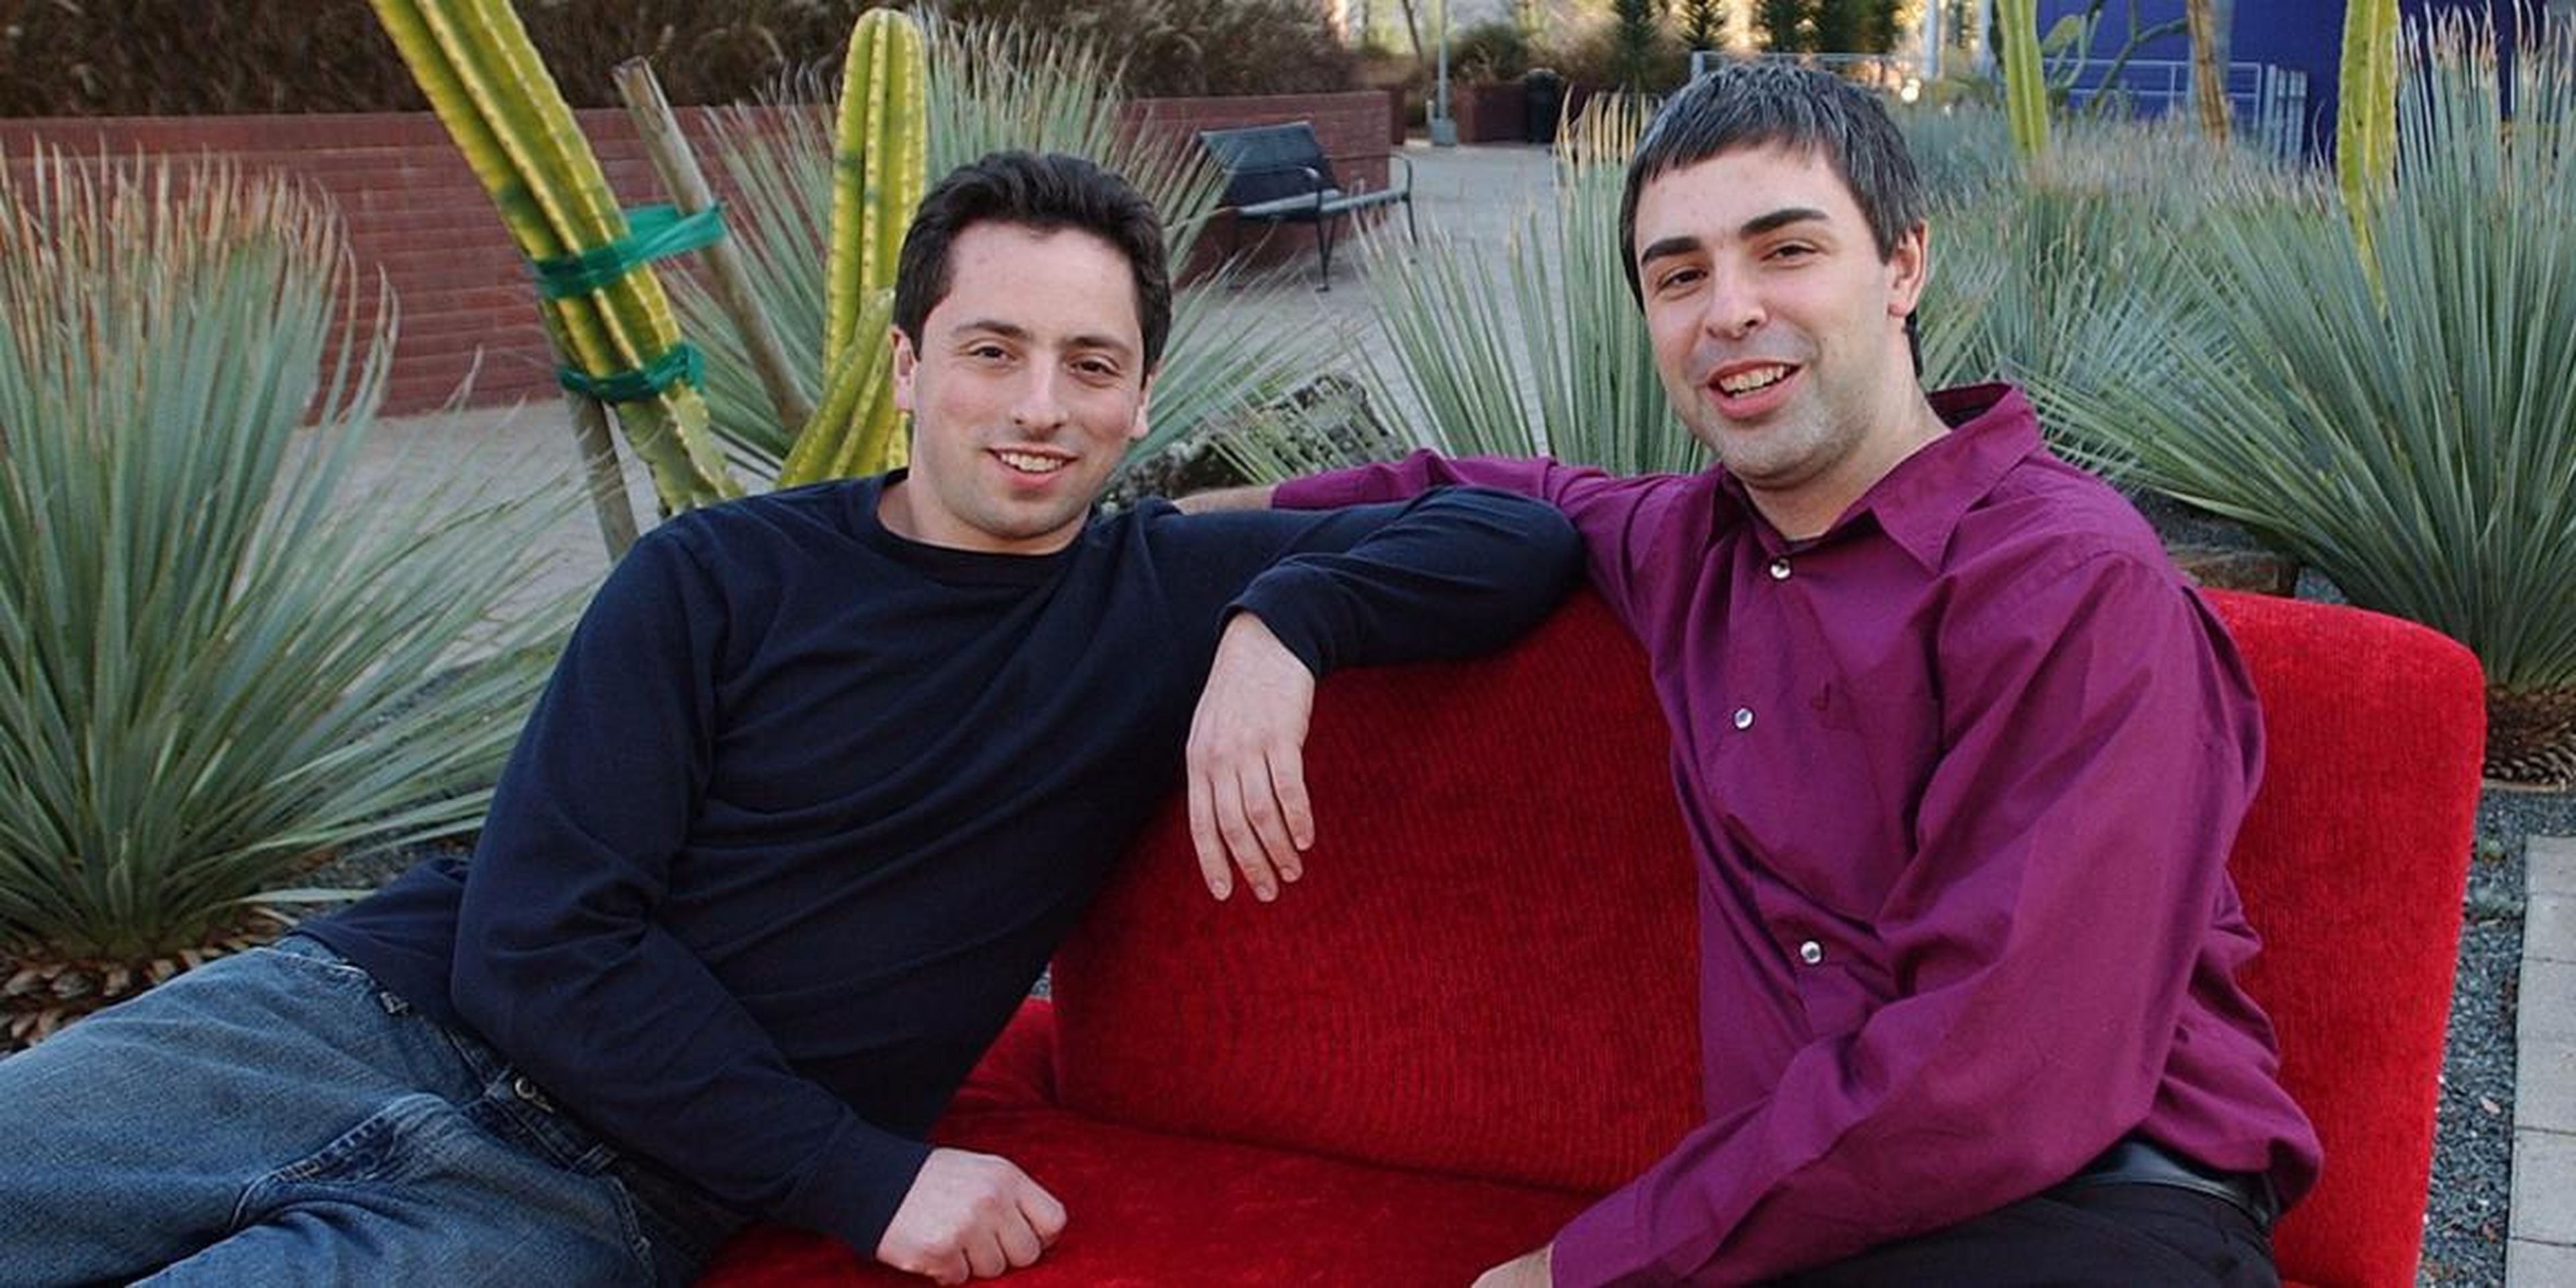 Los fundadores de Google Sergey Brin y Larry Page en los inicios de la compañía.